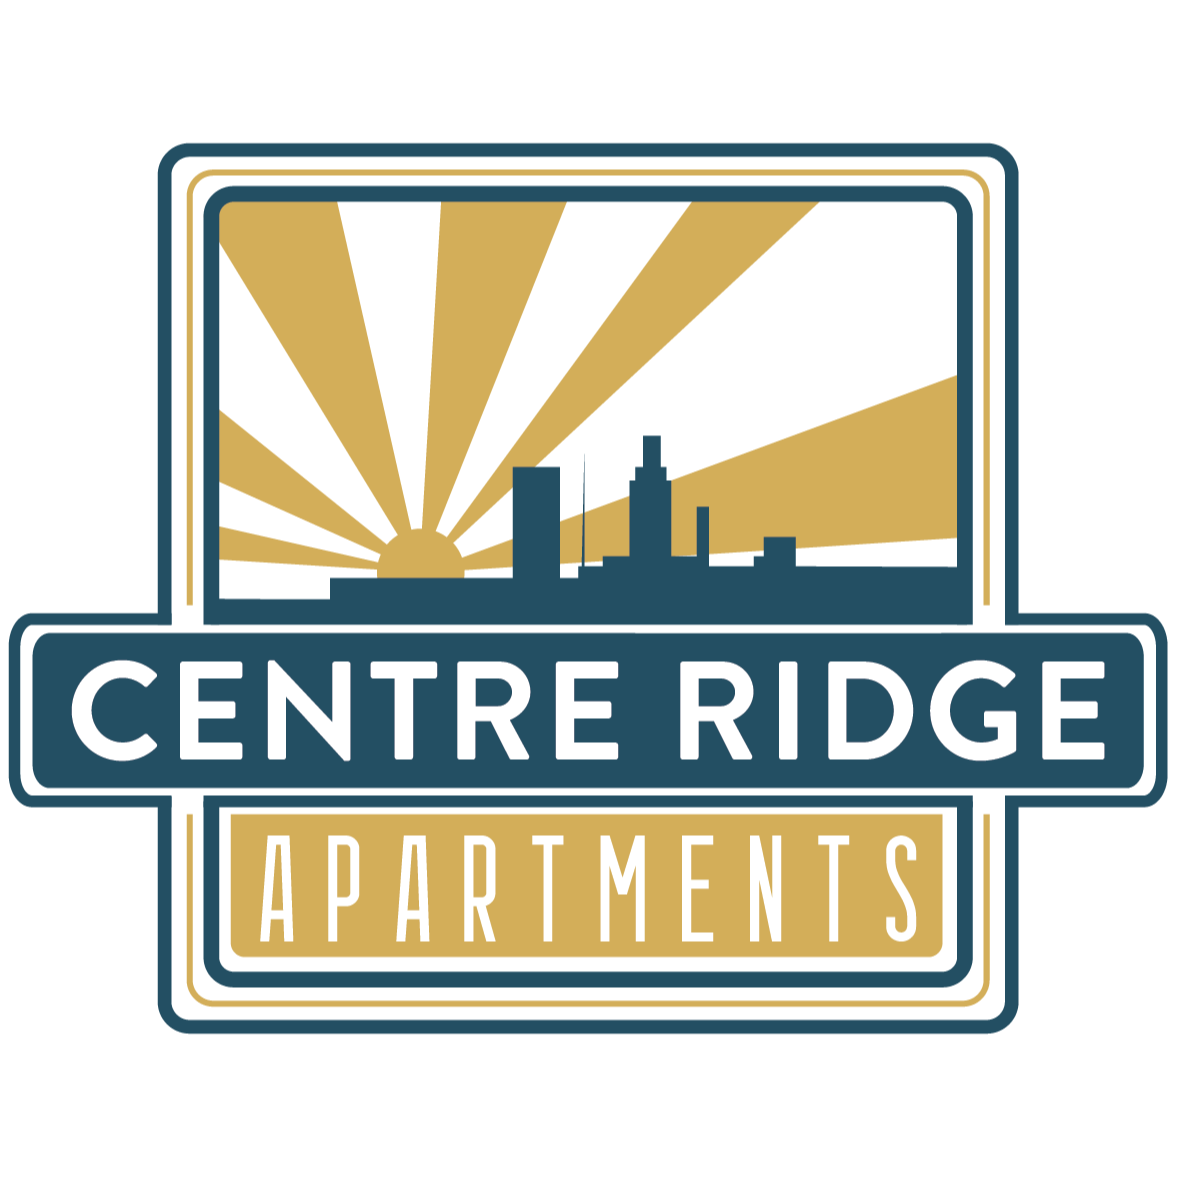 Centre Ridge Apartments - Omaha, NE 68124 - (402)838-2113 | ShowMeLocal.com